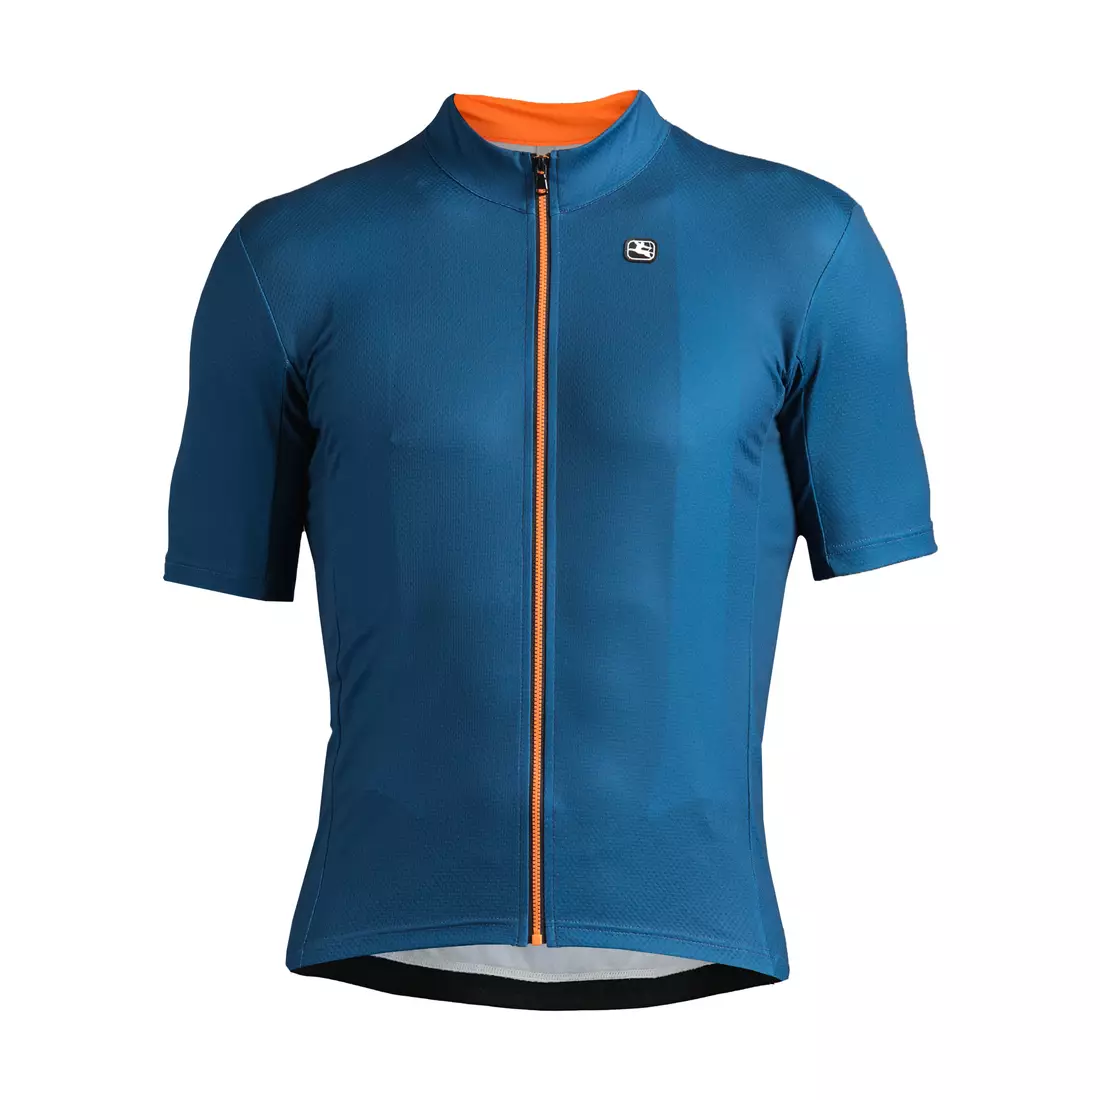 Modrý cyklistický dres GIORDANA FUSION